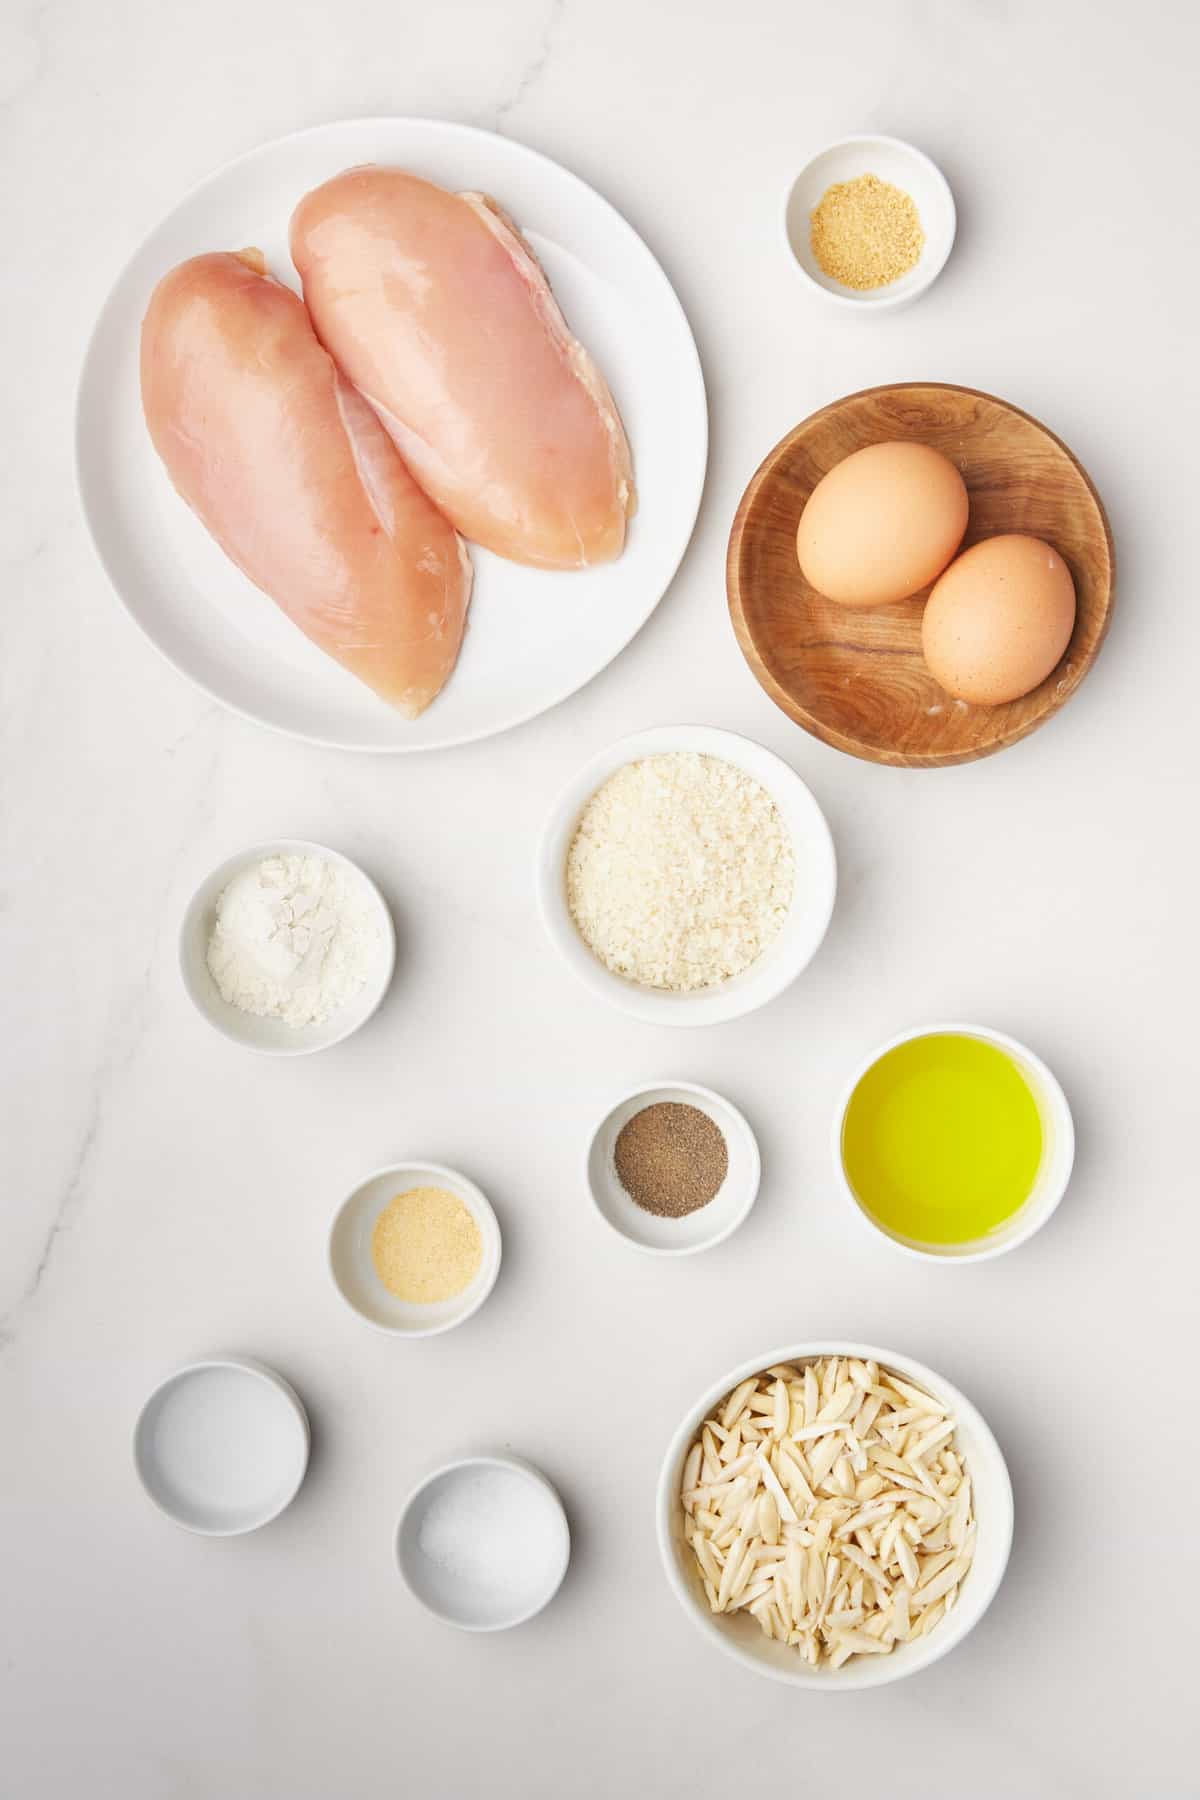 ingredients to make crispy almond chicken breast